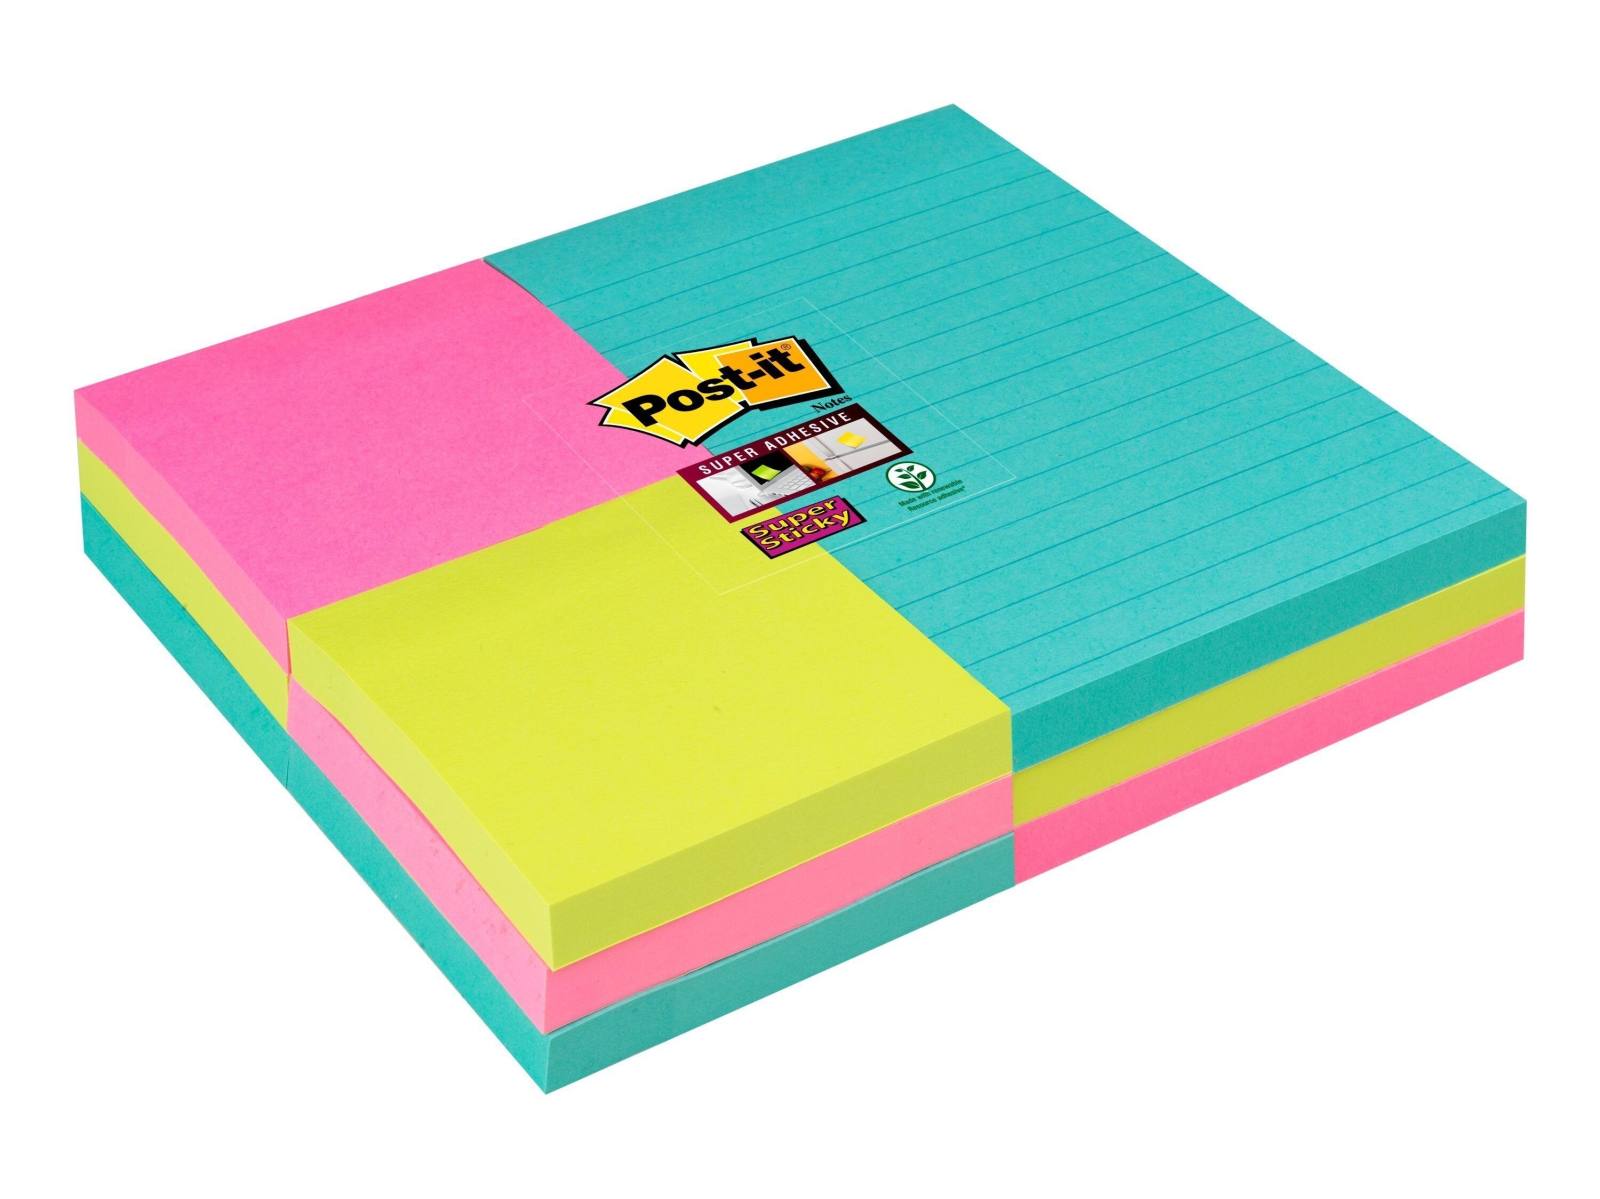 3M Post-it Super Sticky Notes 4633-SS9MIA-EU 9 blocs de 90 feuilles, turquoise, vert fluo, -rose, 6 blocs de 76 mm x 76 mm, sans lignes &amp; 3 blocs de 101 mm x 152 mm, avec lignes, certifié PEFC